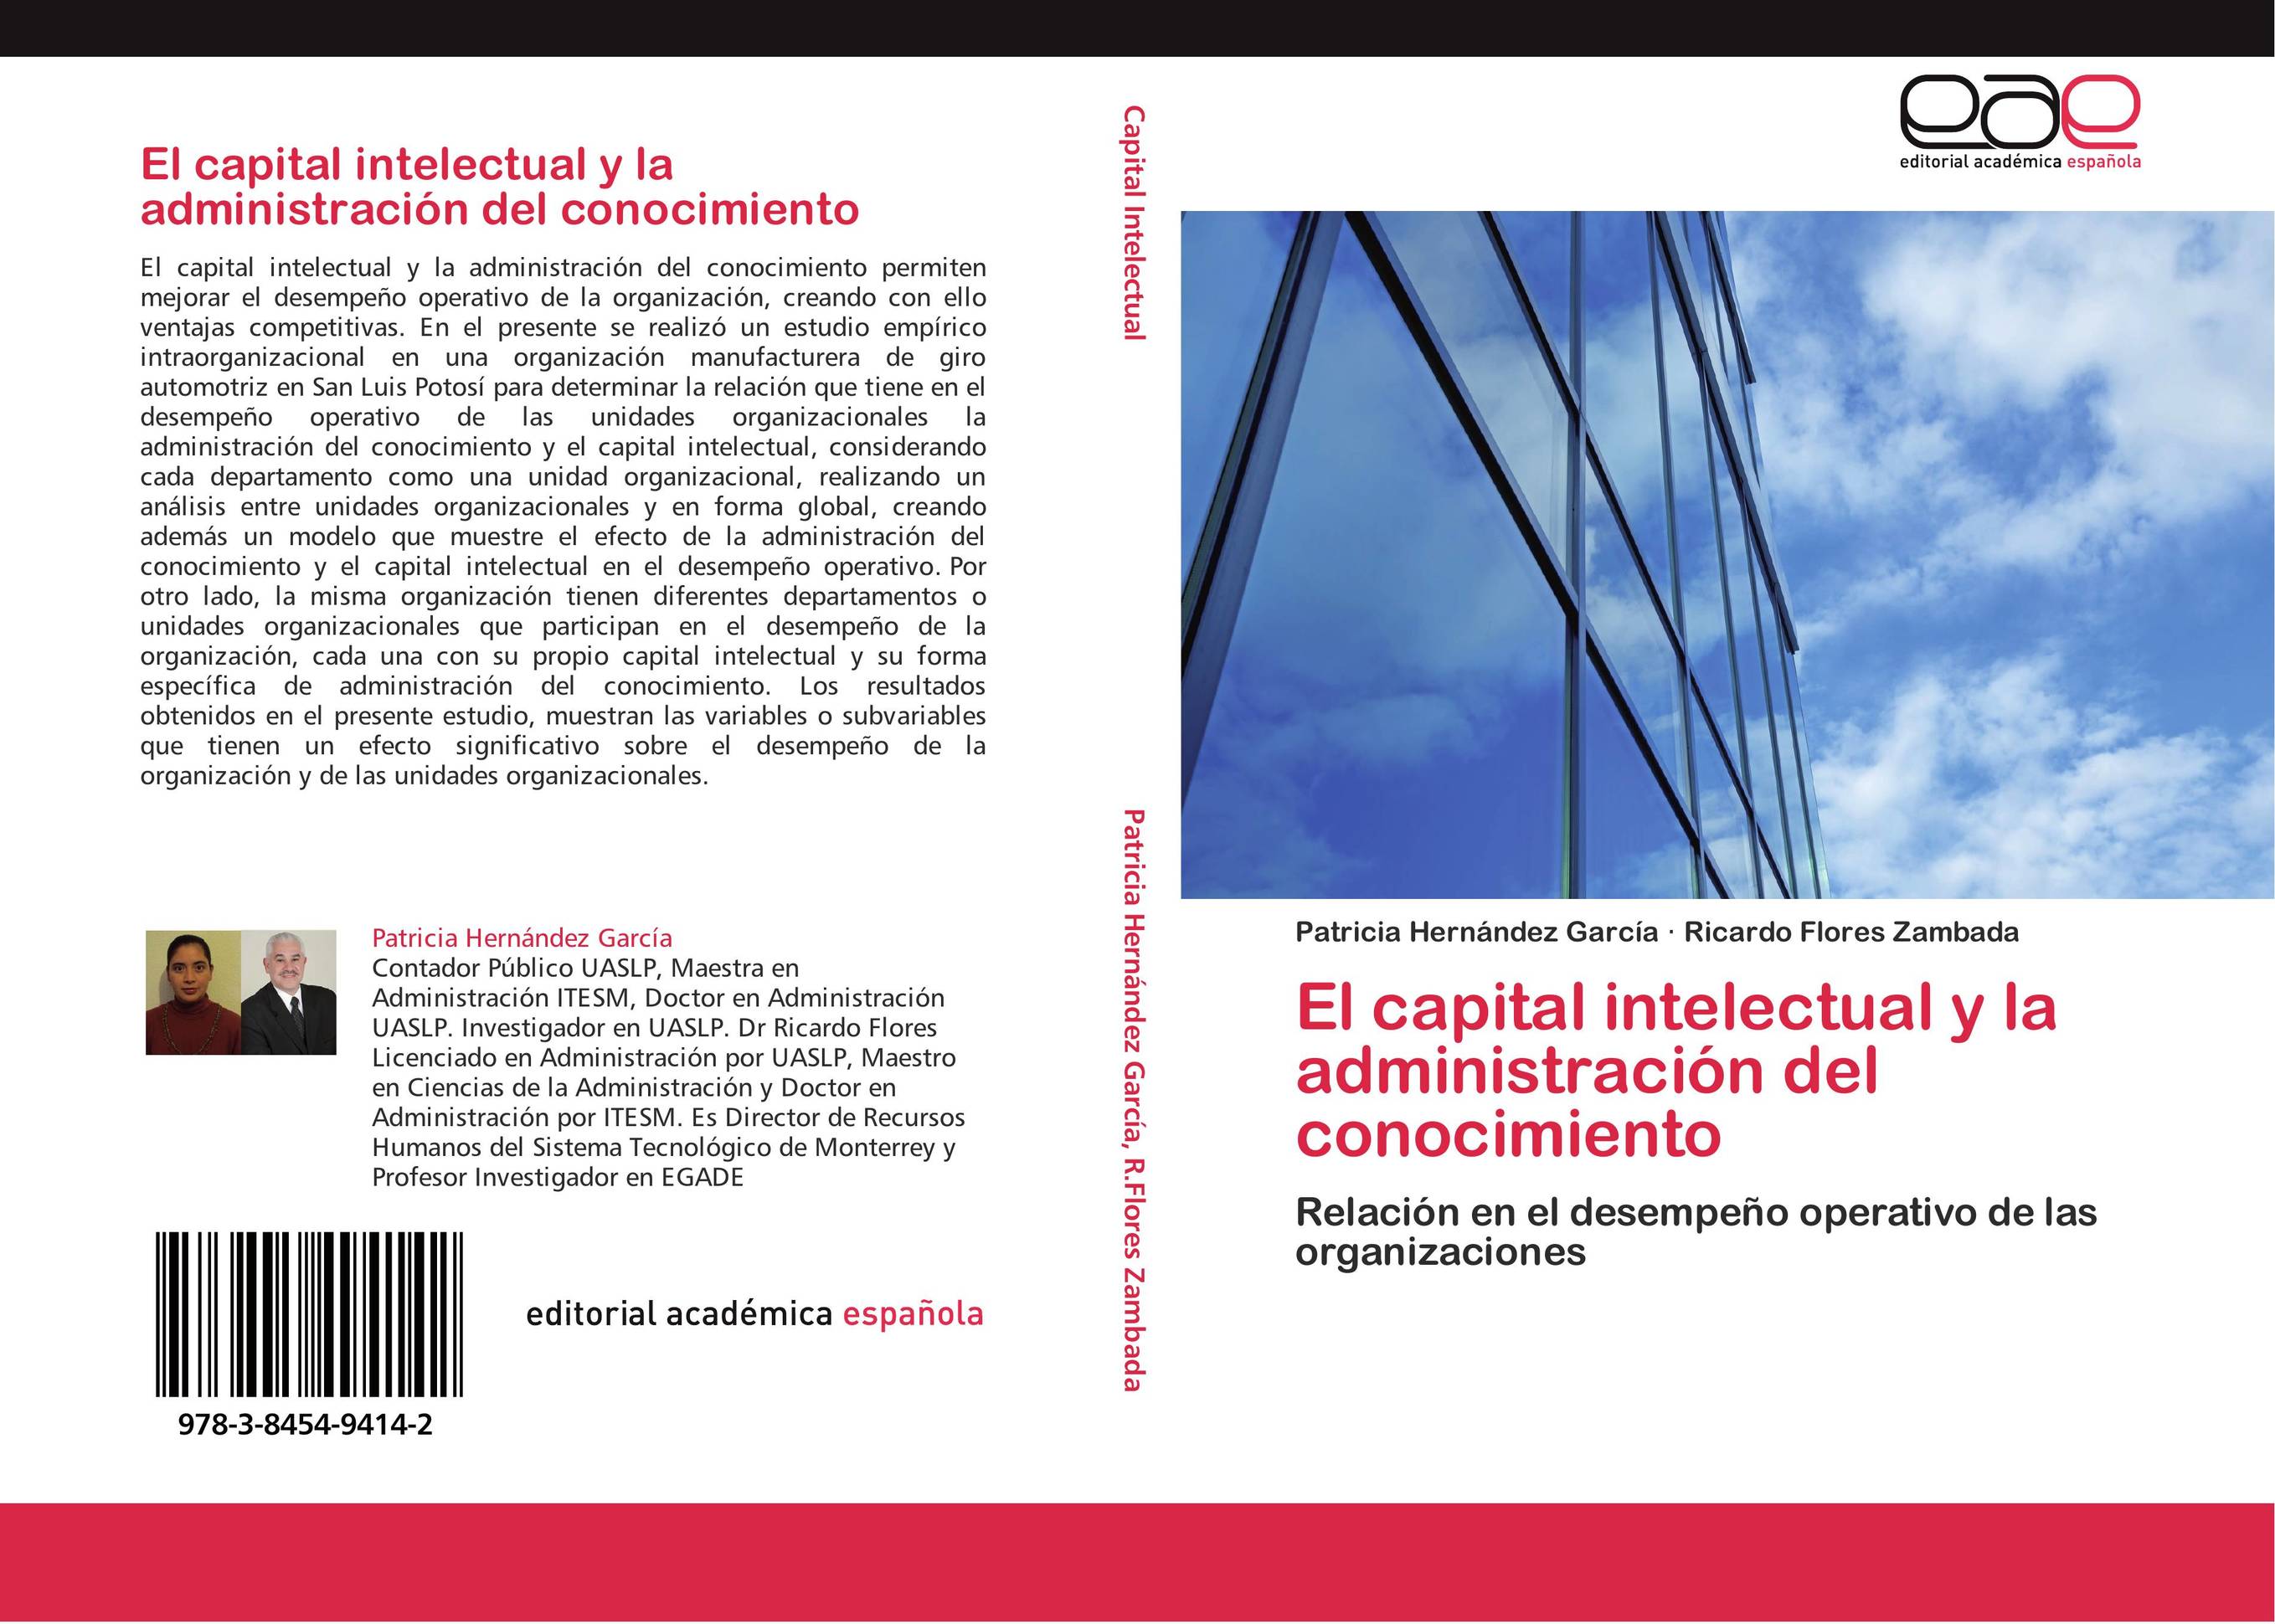 El capital intelectual y la administración del conocimiento